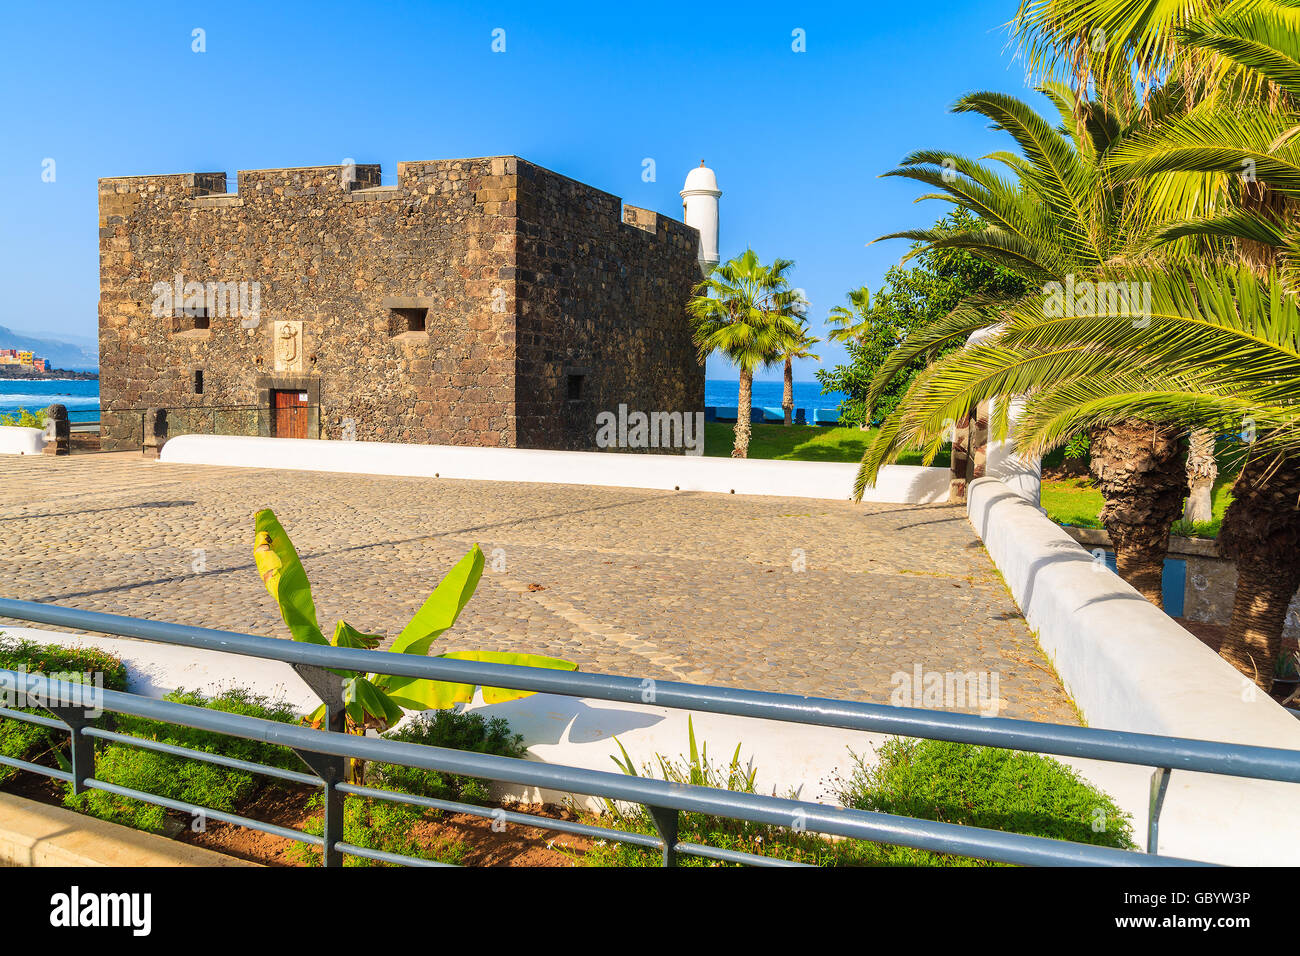 Platz mit Burgenbau in der Stadt Puerto De La Cruz, Teneriffa, Kanarische Inseln, Spanien Stockfoto